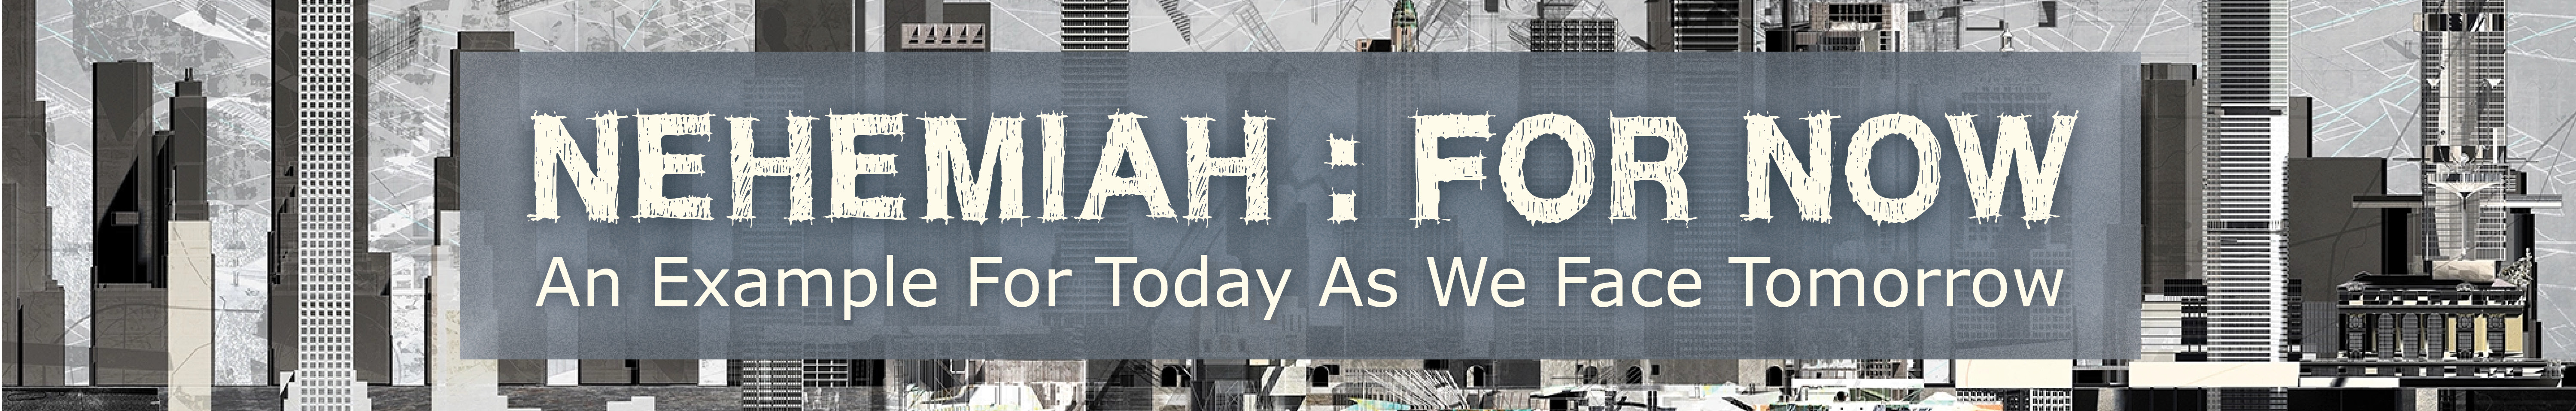 Nehemiah : For Now